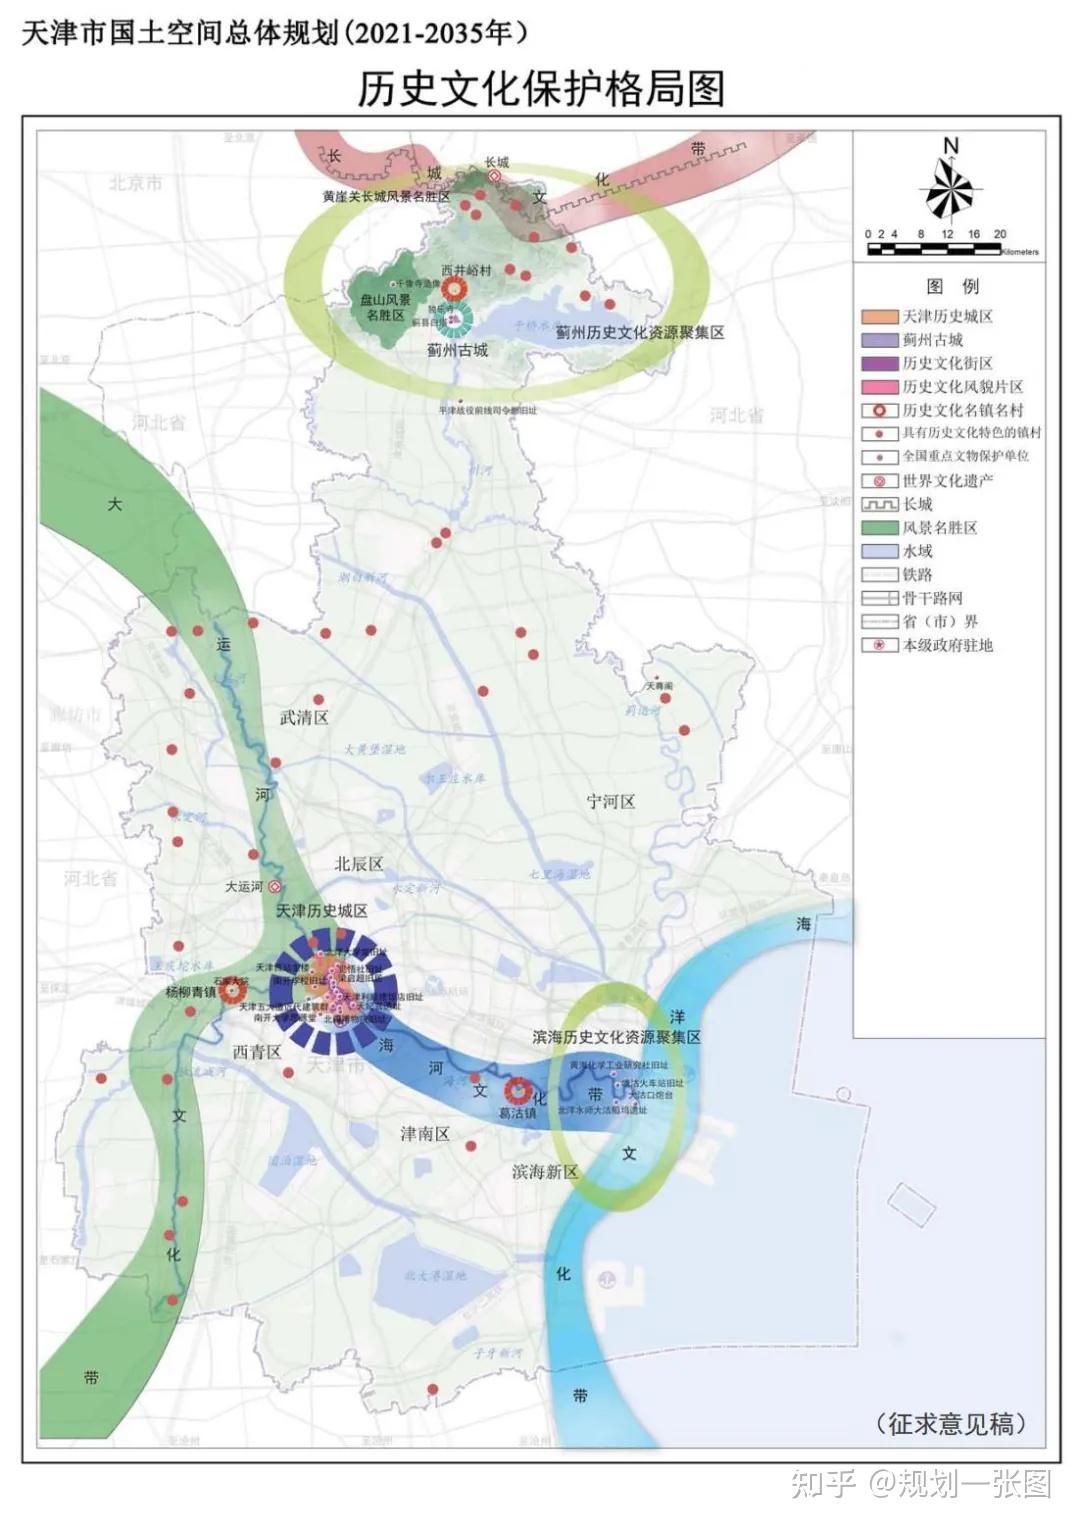 天津市国土空间总体规划公示